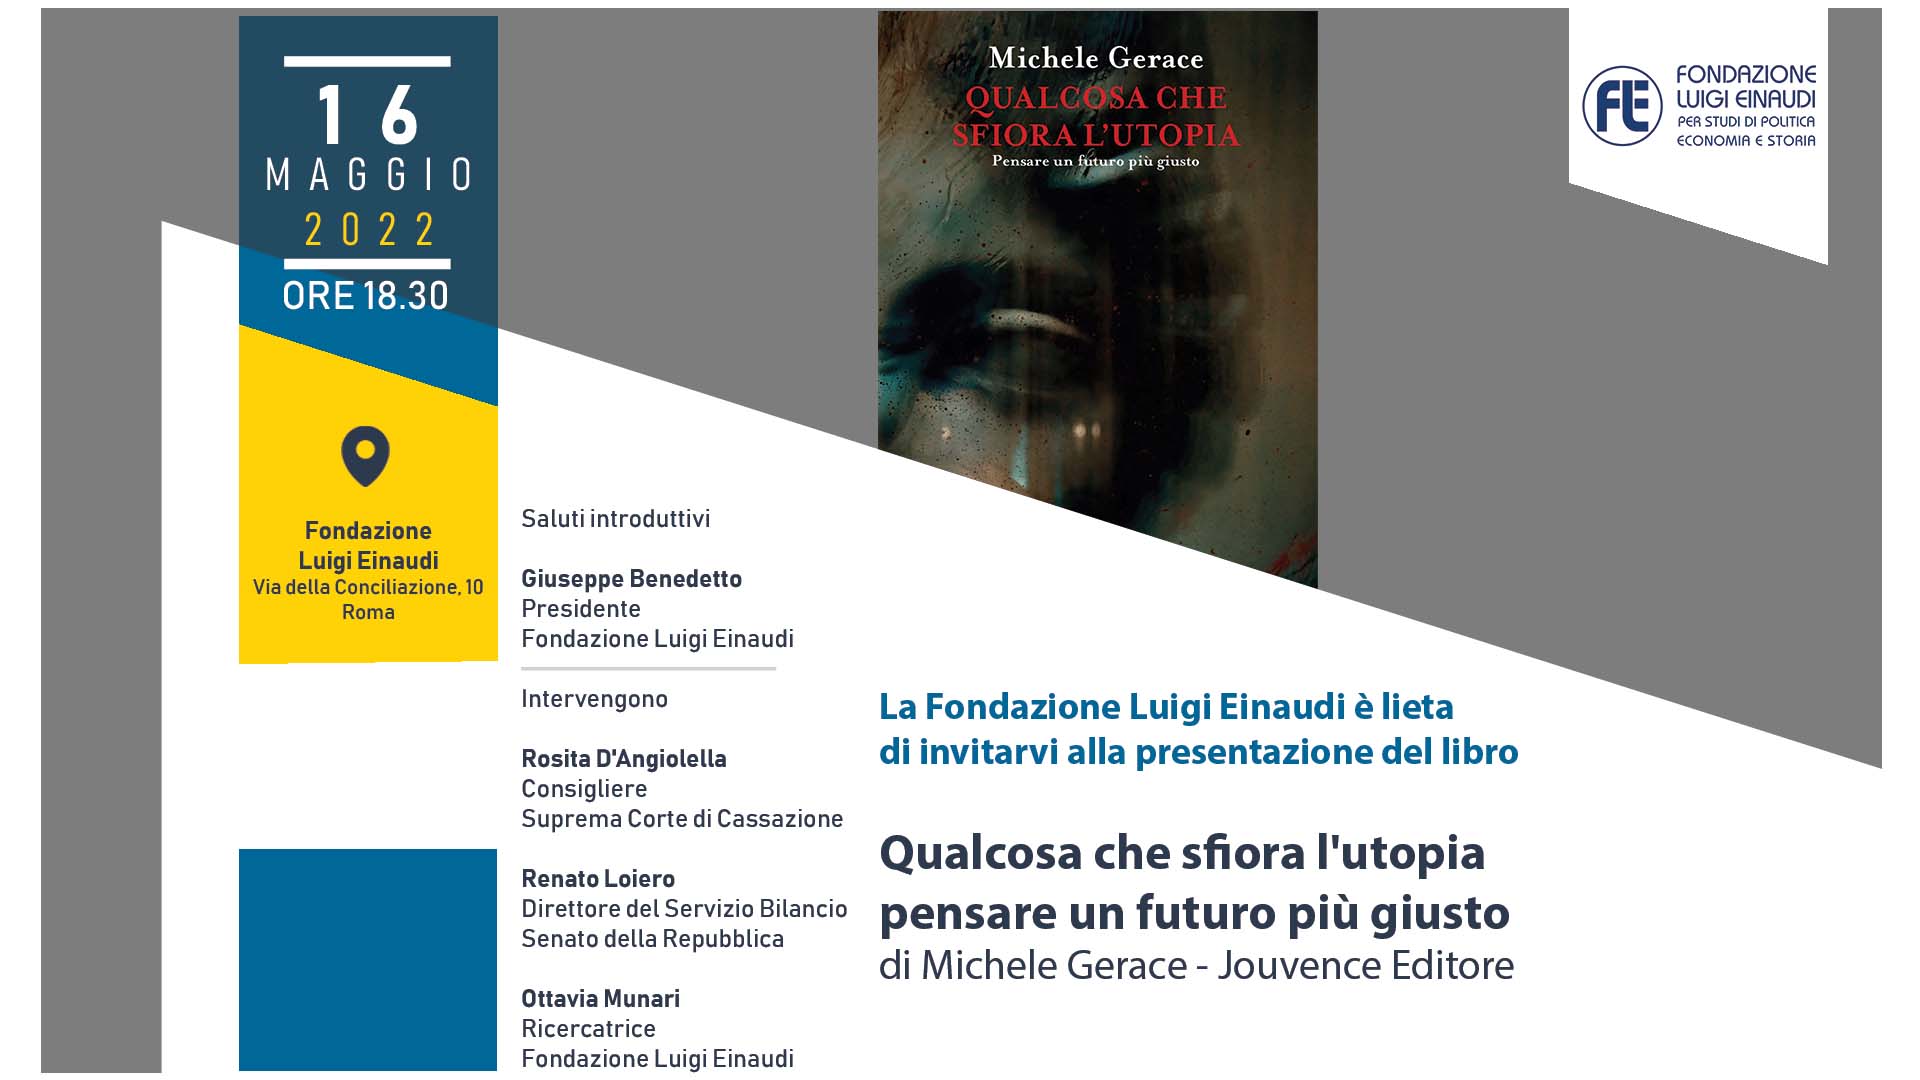 Presentation of the Book “Qualcosa Che Sfiora L’utopia” edited by Michele Gerace